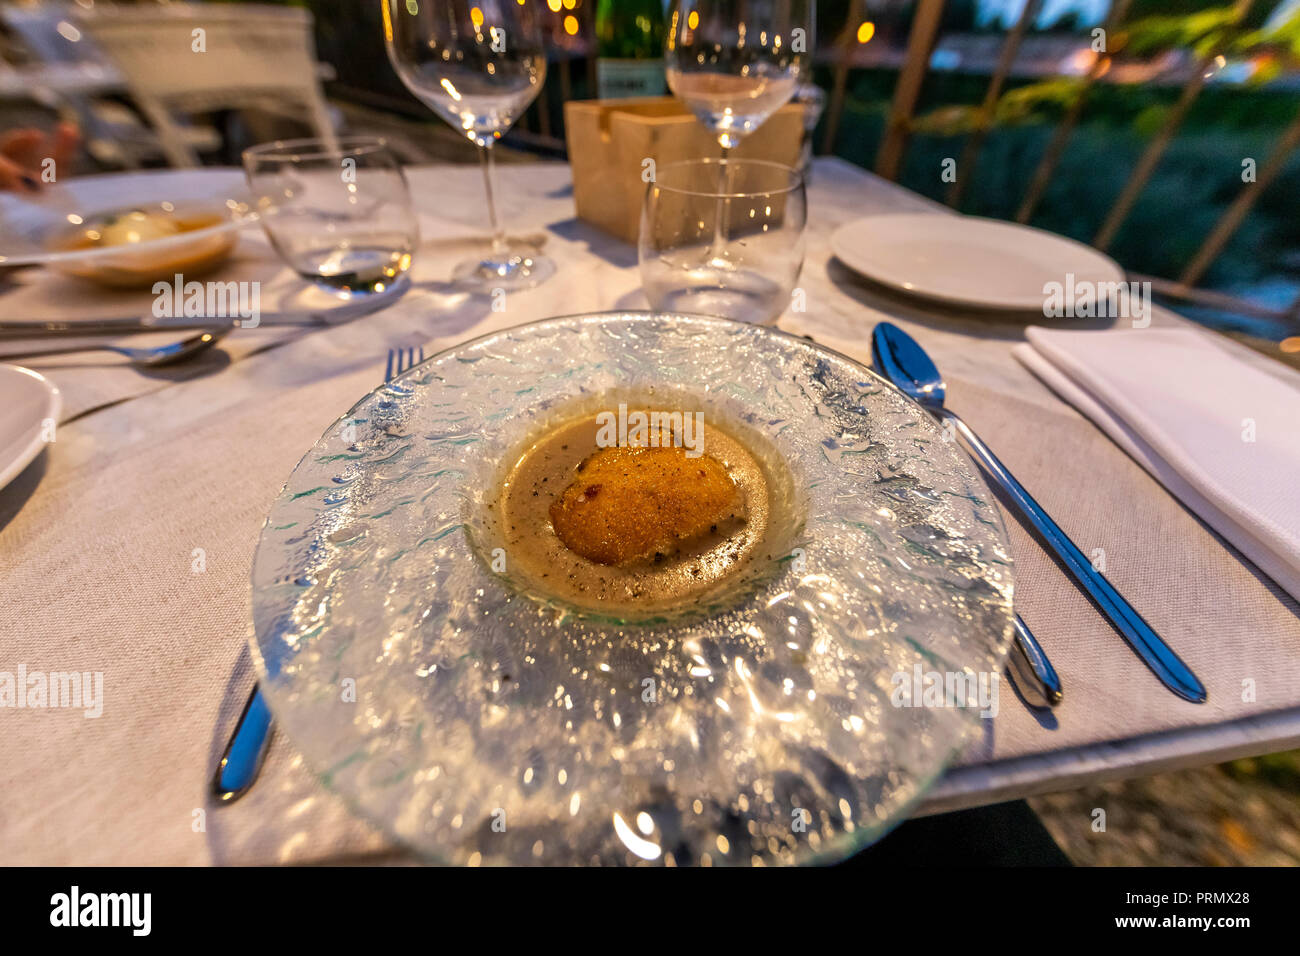 Soft Uovo affogato in una crosta e zuppa di porcini. Osteria Palio, Bagni di Lucca Foto Stock